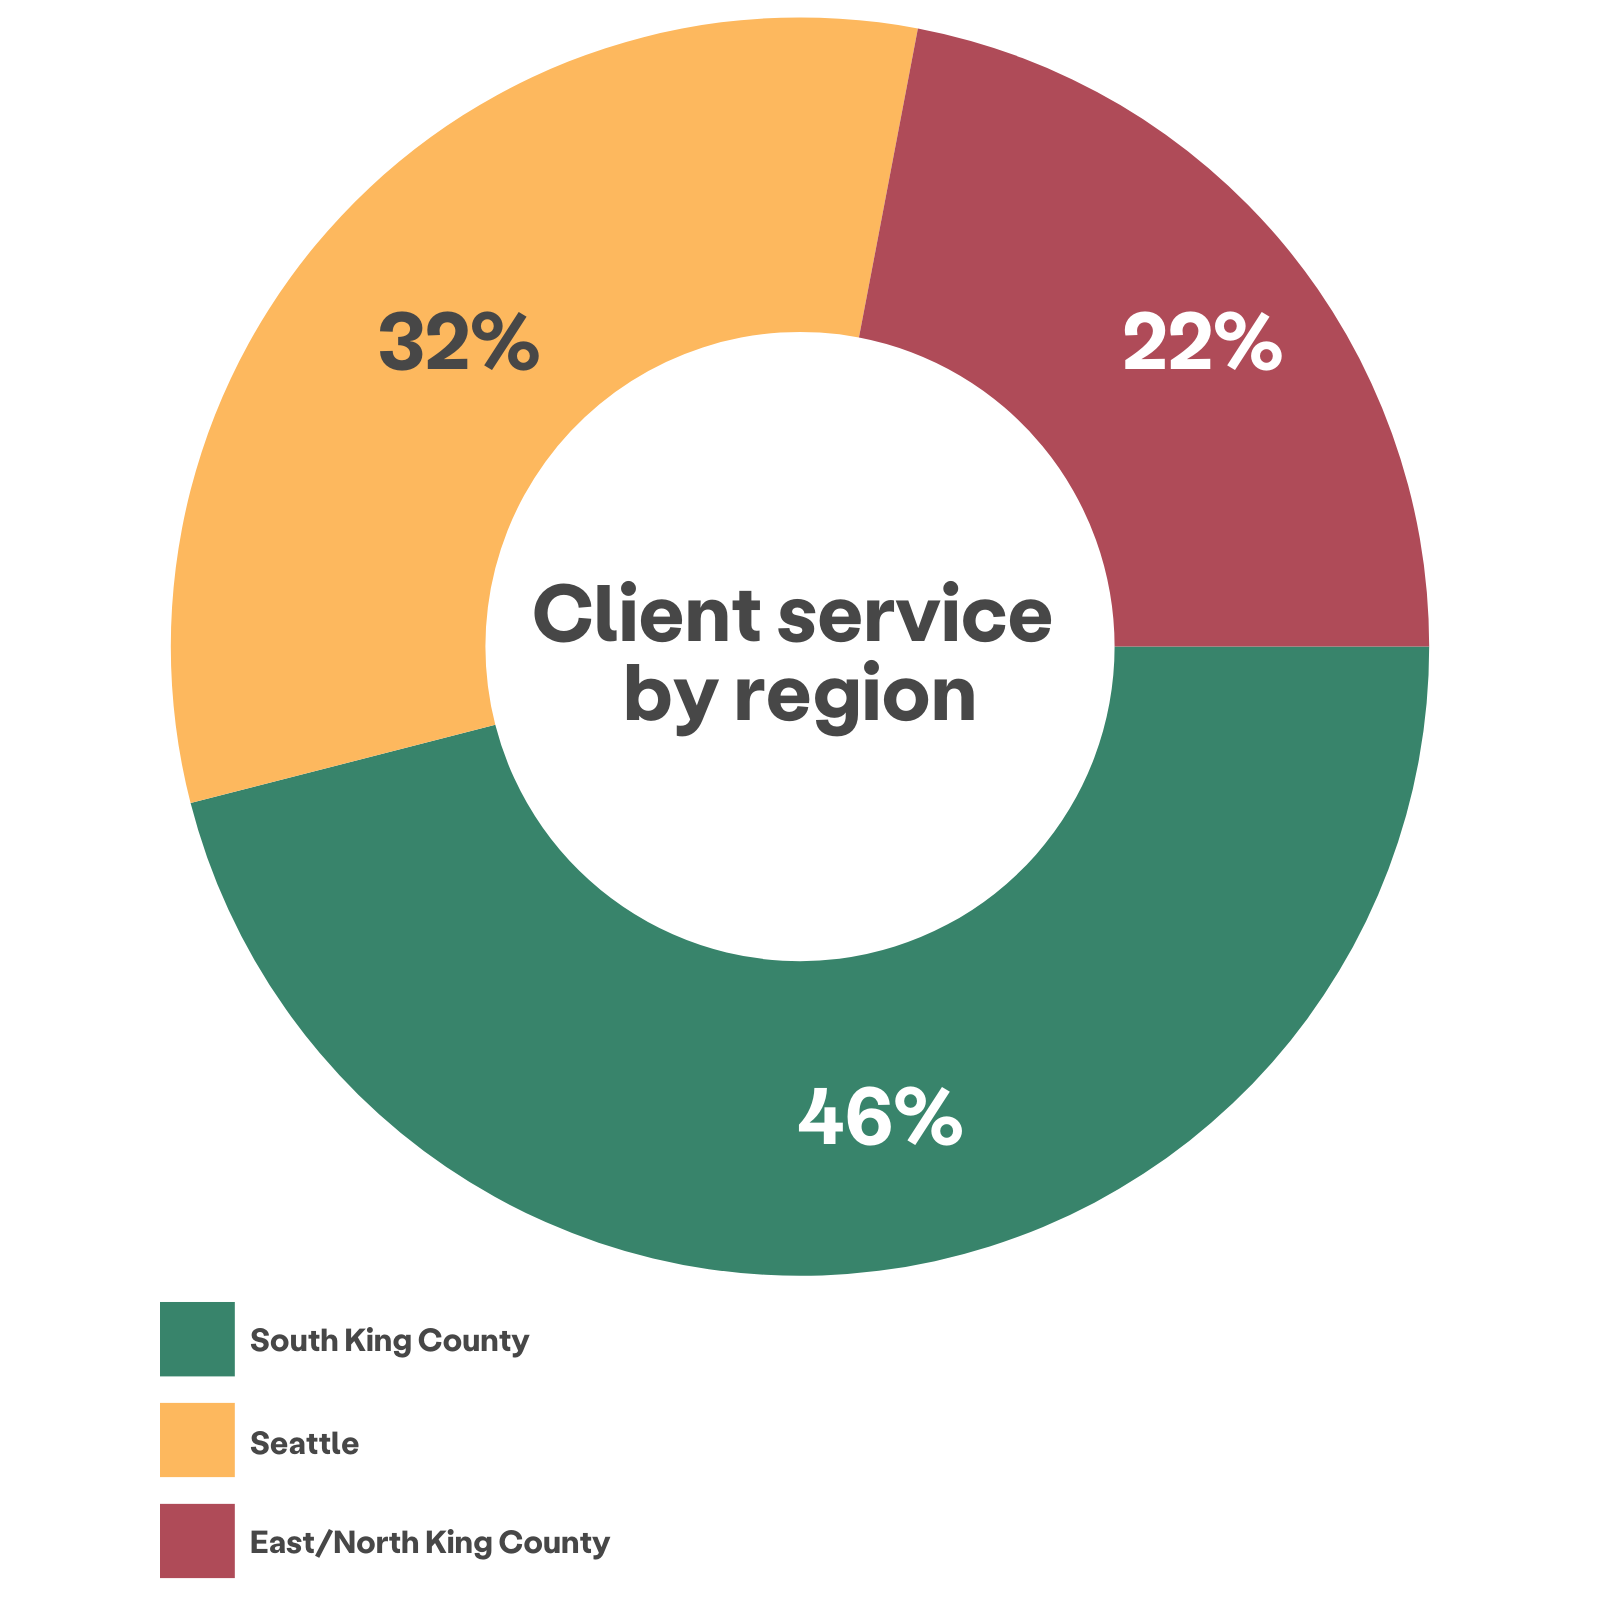 Ringdiagramm des Kundendienstes nach Regionen, das zeigt, dass 46% aus South King County, 32% aus Seattle und 22% aus East/North King County bedient werden